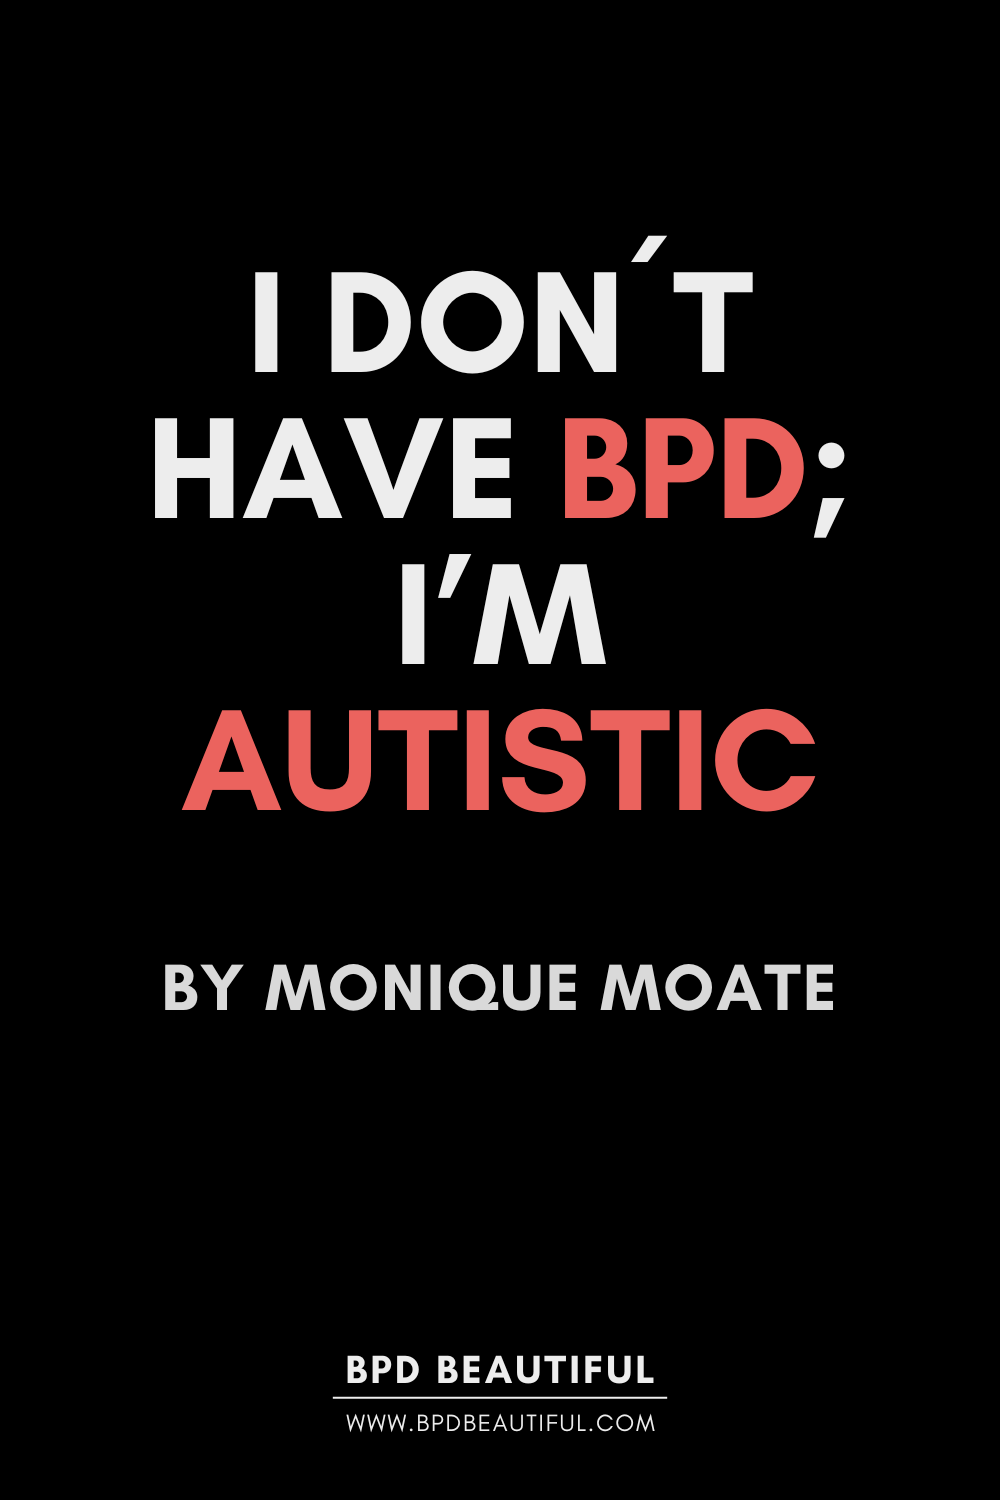 bpd vs autism